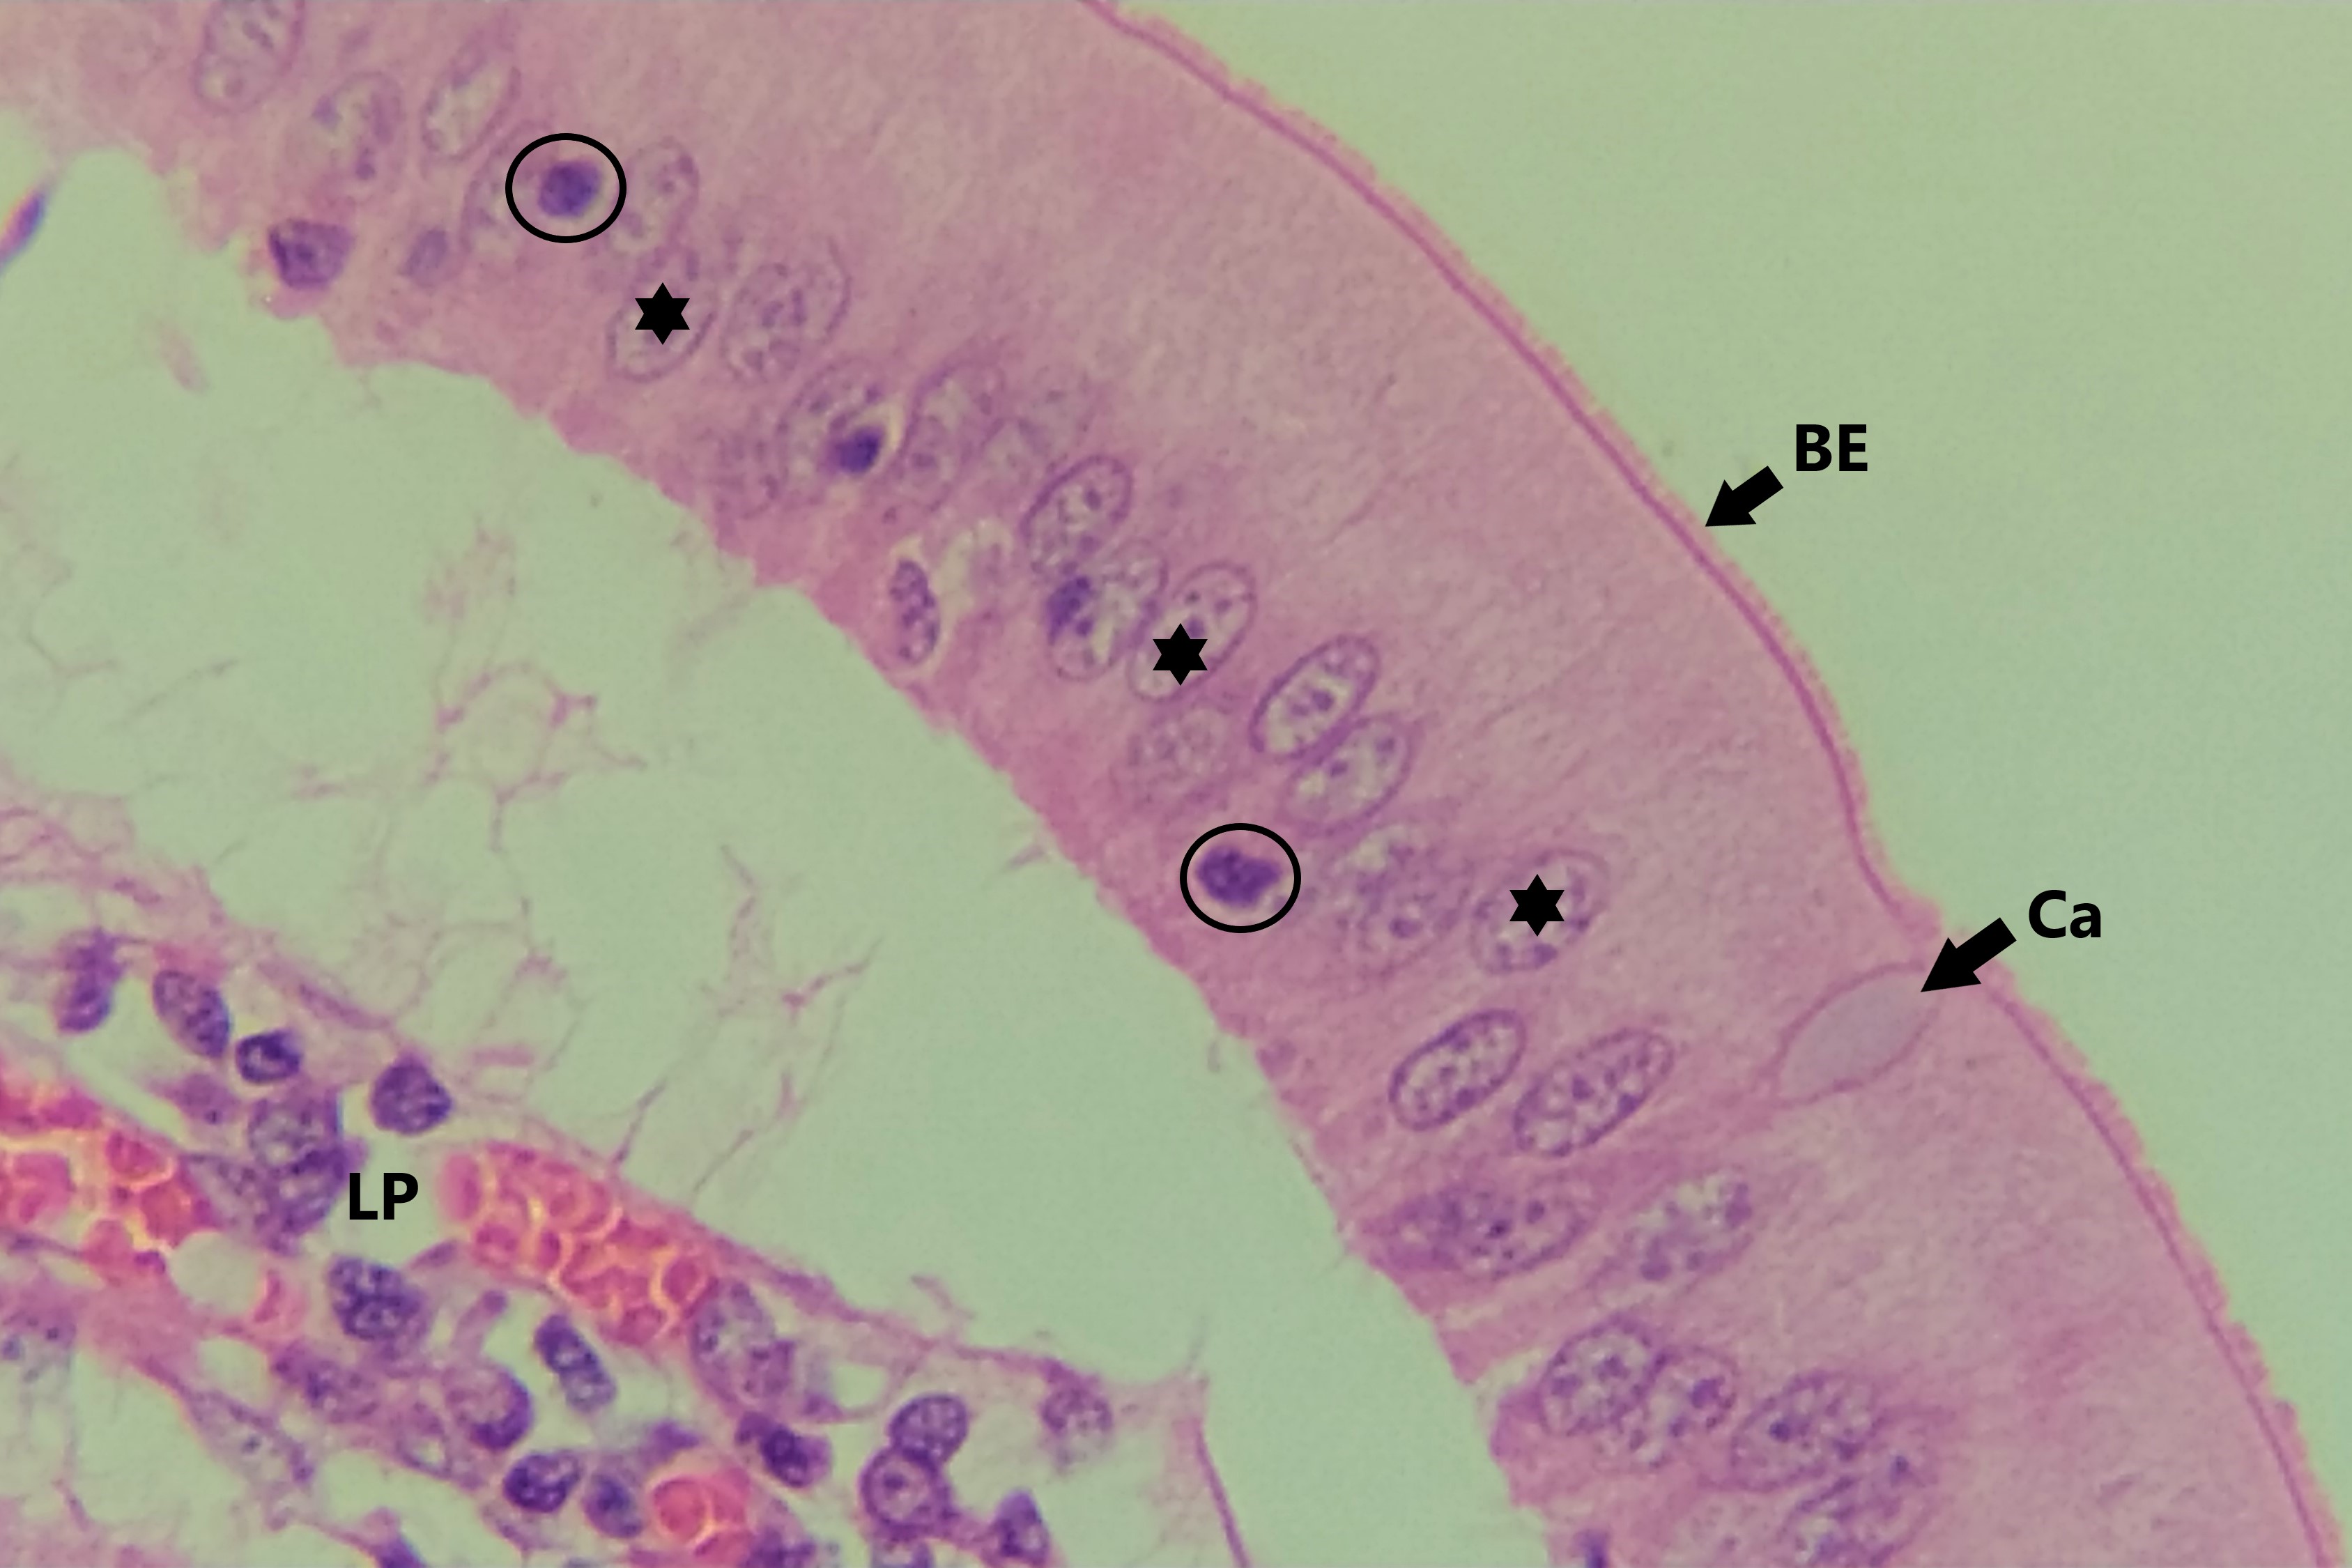 Lâmina: Intestino delgado - duodeno (H&E - Aumento: 400x). No epitélio simples colunar do intestino delgado pode-se observar dois tipos célulares, as células colunares (enterócitos) e células caliciformes (Ca), produtoras de muco. Os núcleos das células colunares (asteriscos) são alongados e dispostos no sentido do eixo maior da célula. As células caliciformes são palidamente coradas uma vez que parte de seu conteúdo é perdido durante processamento da lâmina. No epitélio podem ser encontrados linfócitos intraepiteliais (círculo), que são células de defesa transitórias. A superfície apical do epitélio tem grande quantidade de microvilos, que aparecem com aspecto estriado ao microscópio óptico, formando a borda estriada (BE).